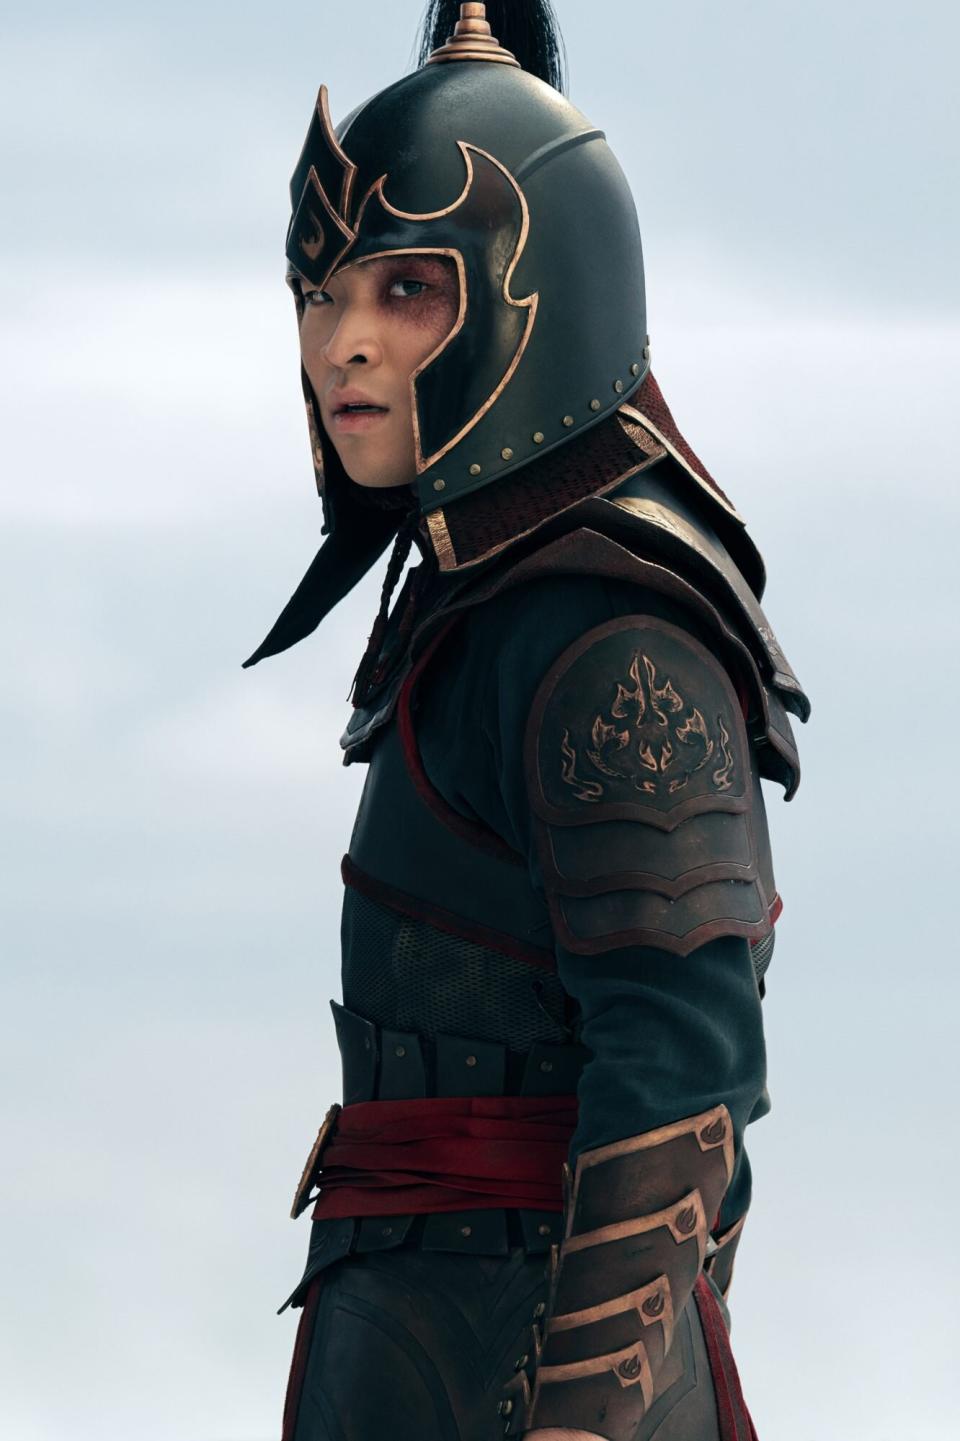 Dallas Liu as Prince Zuko in Avatar: The Last Airbender